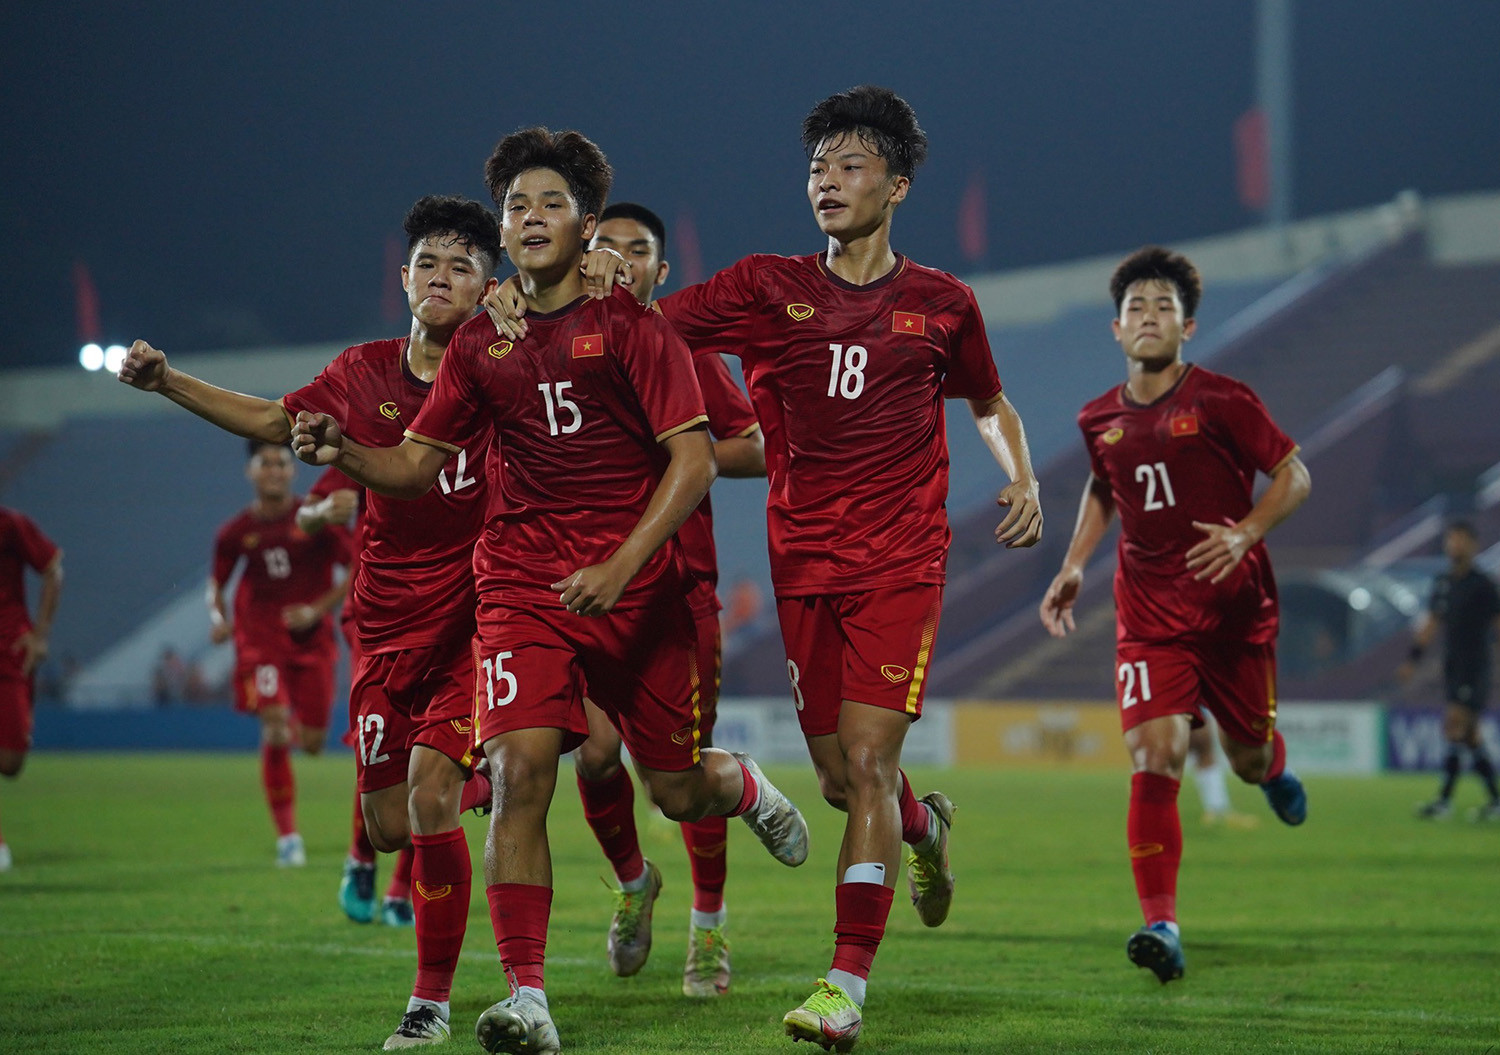 U17 Việt Nam gặp Nhật Bản, Ấn Độ, Uzbekistan tại giải châu Á